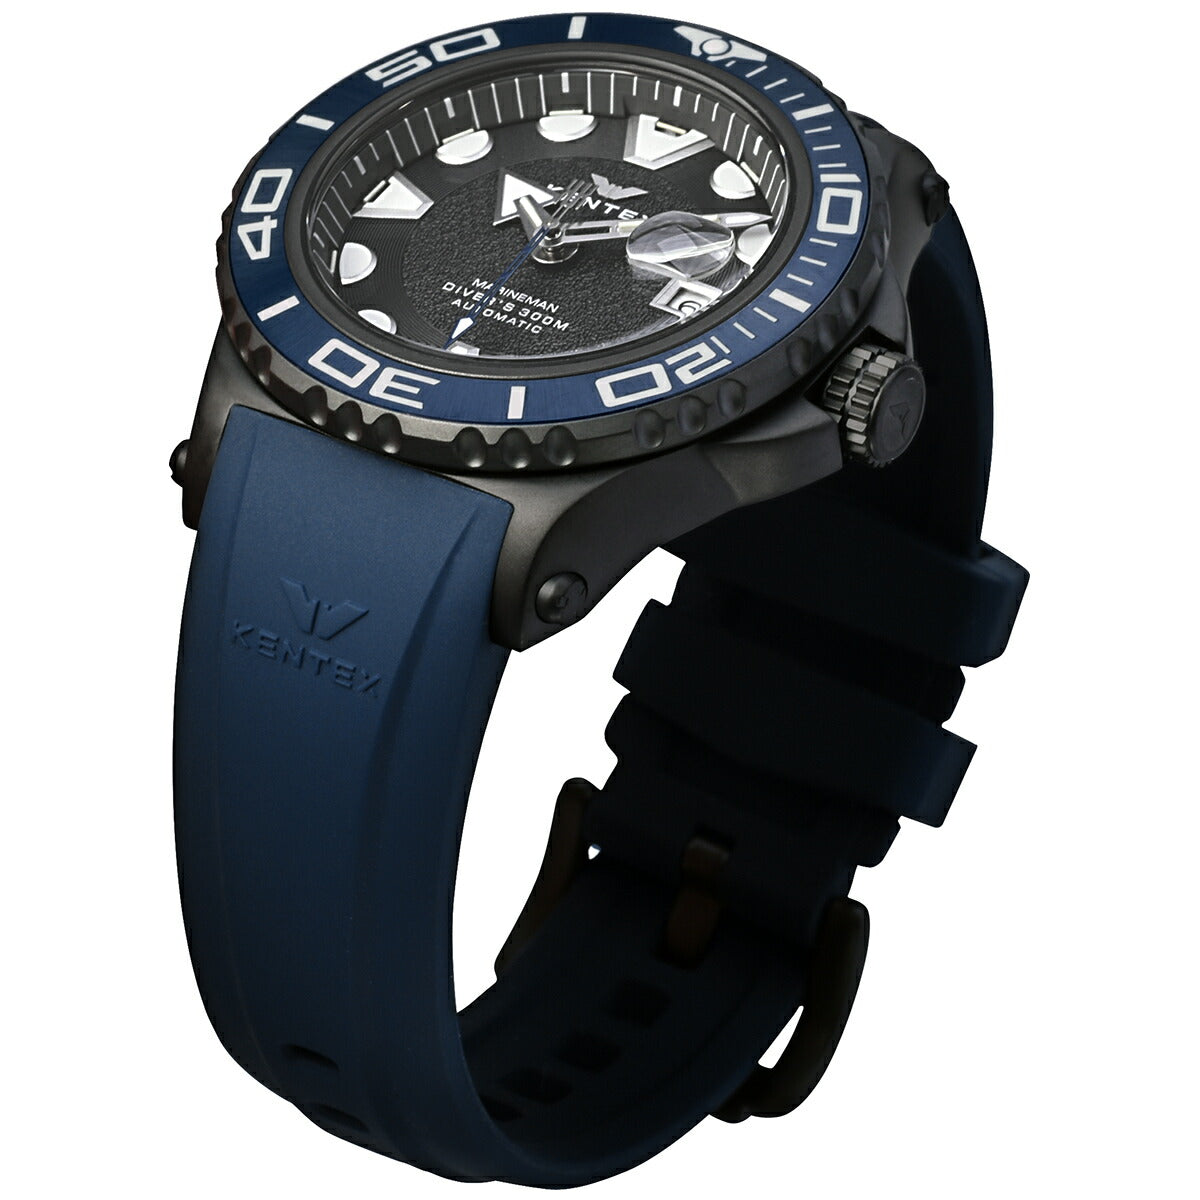 【5月から値上げ！】ケンテックス KENTEX マリンマン シーアングラー ダイバー 日本製 S706X-5 腕時計 時計 メンズ 300M潜水防水 自動巻き MARINEMAN SEA-ANGLER